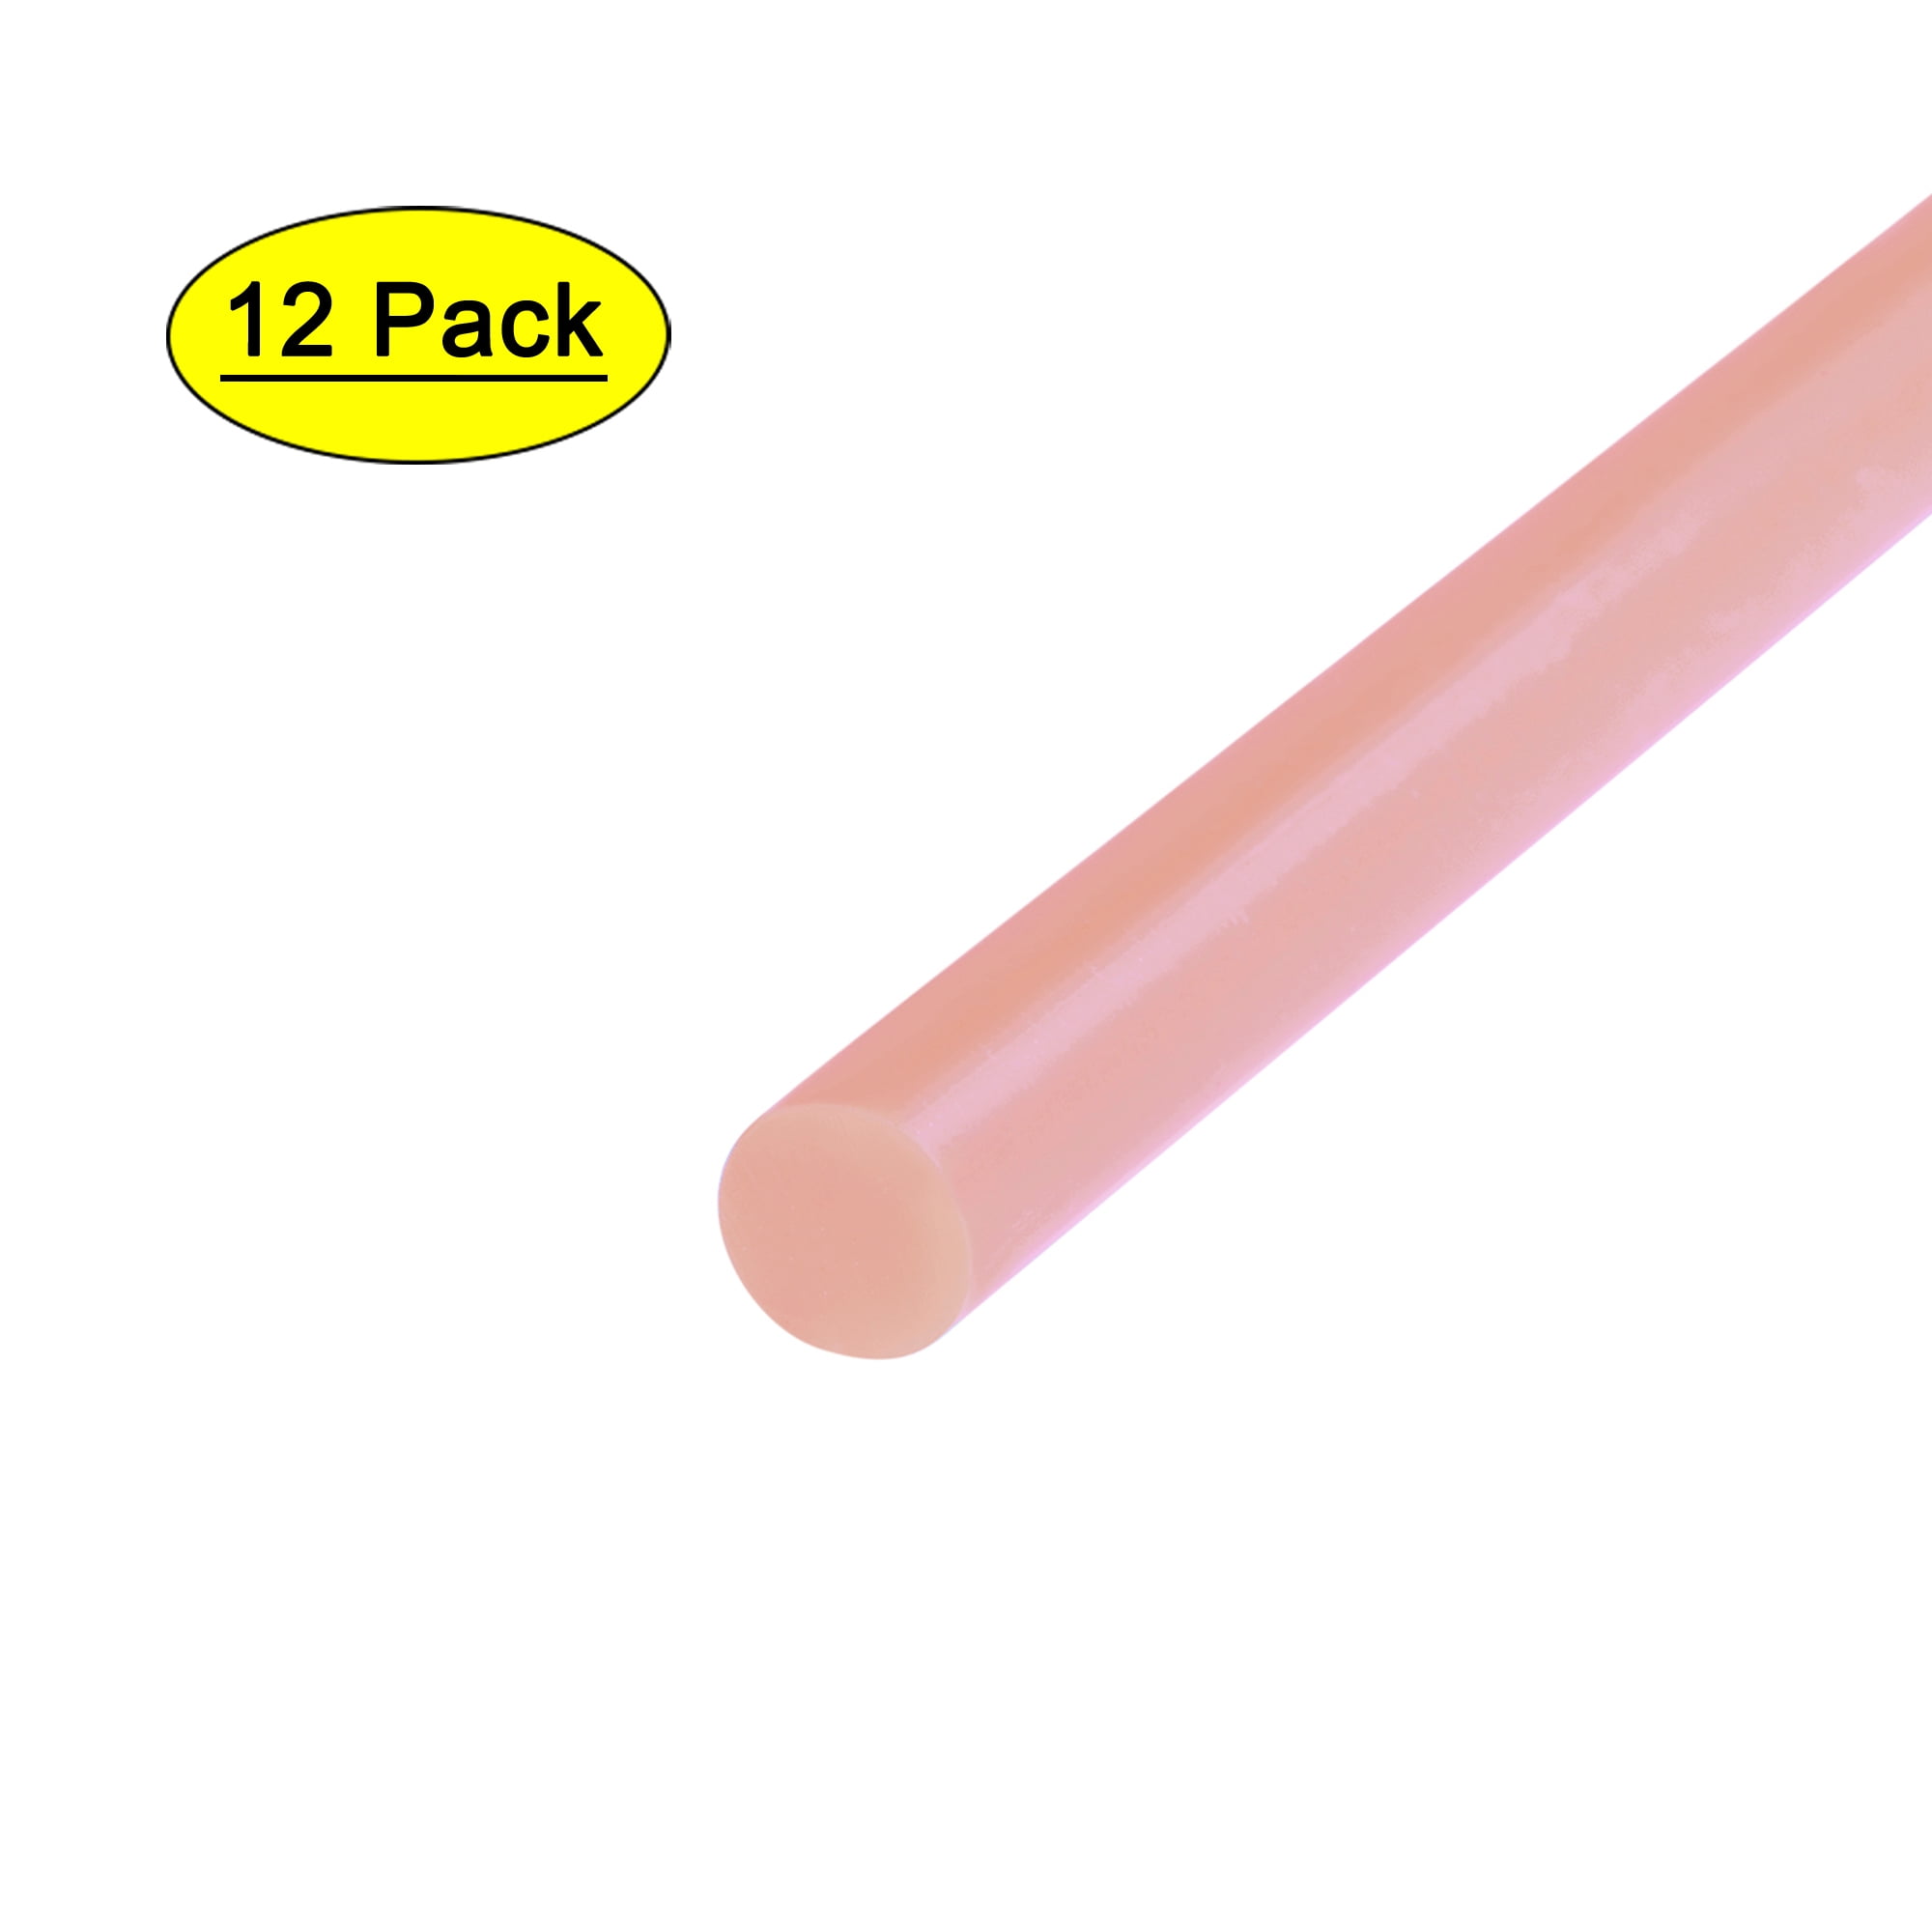  Mini Glue Gun Sticks, GoGonova 120 Pcs Clear Mini Glue Sticks,  0.27 Diameter and 4 Long Hot Melt Glue Sticks - Compatible with Most Mini  Glue Guns : Arts, Crafts & Sewing